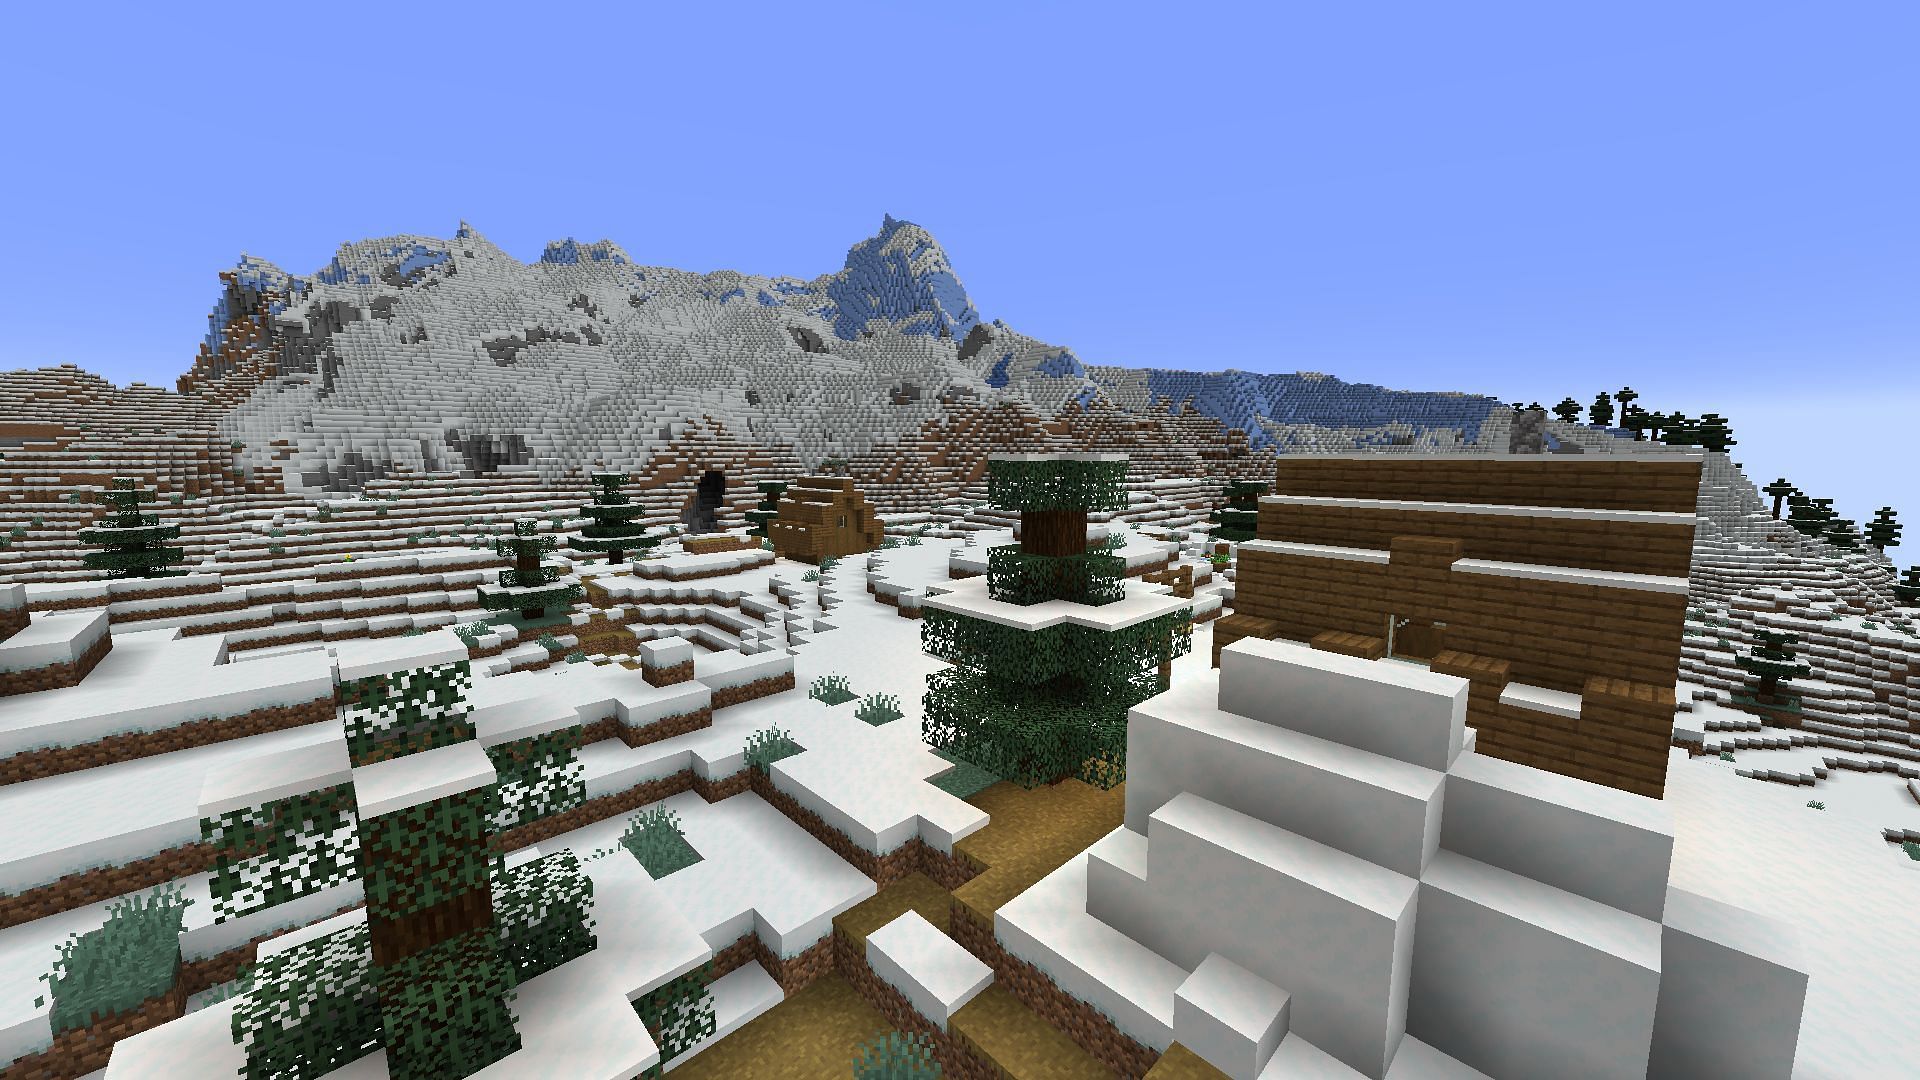 Холодные горы рядом с деревней этого семени Minecraft хранят темную тайну (Изображение взято с Mojang)